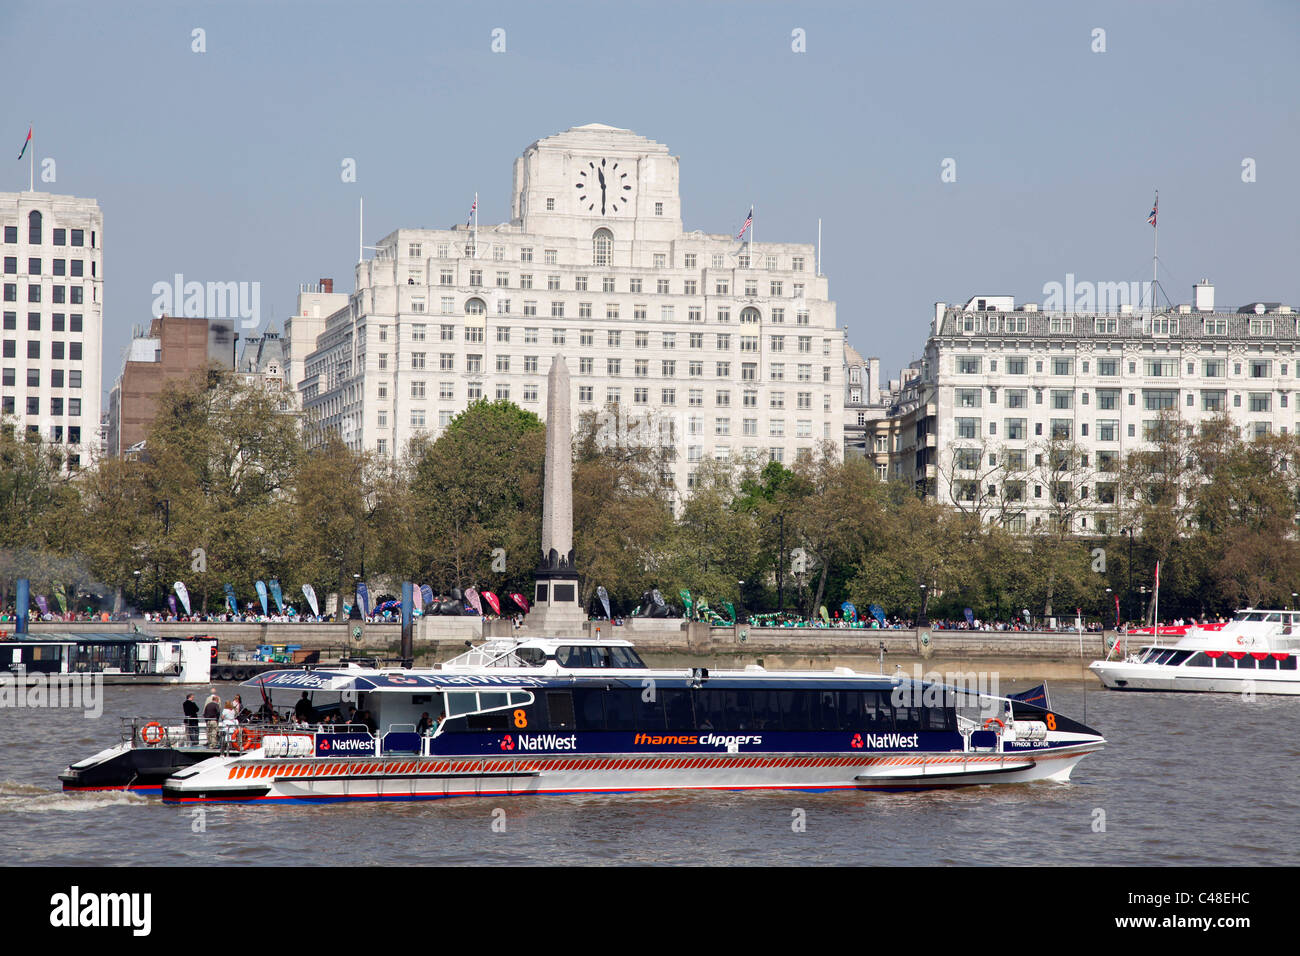 Thames Clipper turistico barca sul fiume Tamigi a Londra in Inghilterra Foto Stock